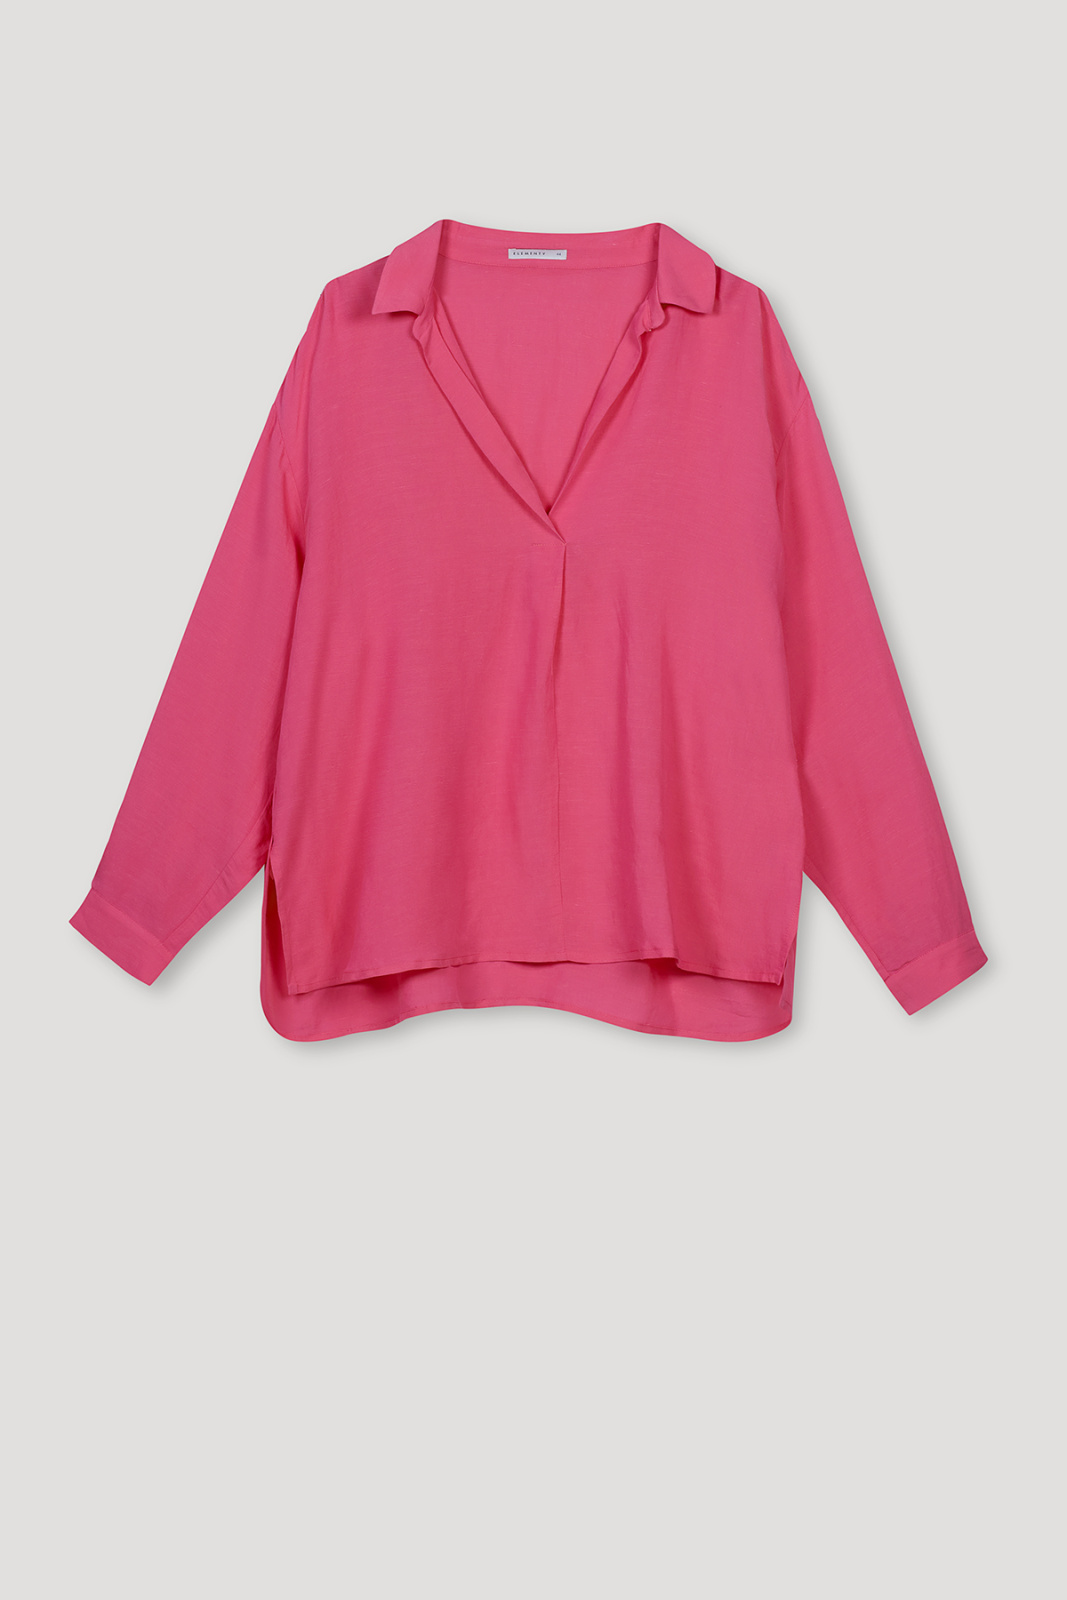 Rosa Summer Shirt Pink Outlet Elementy